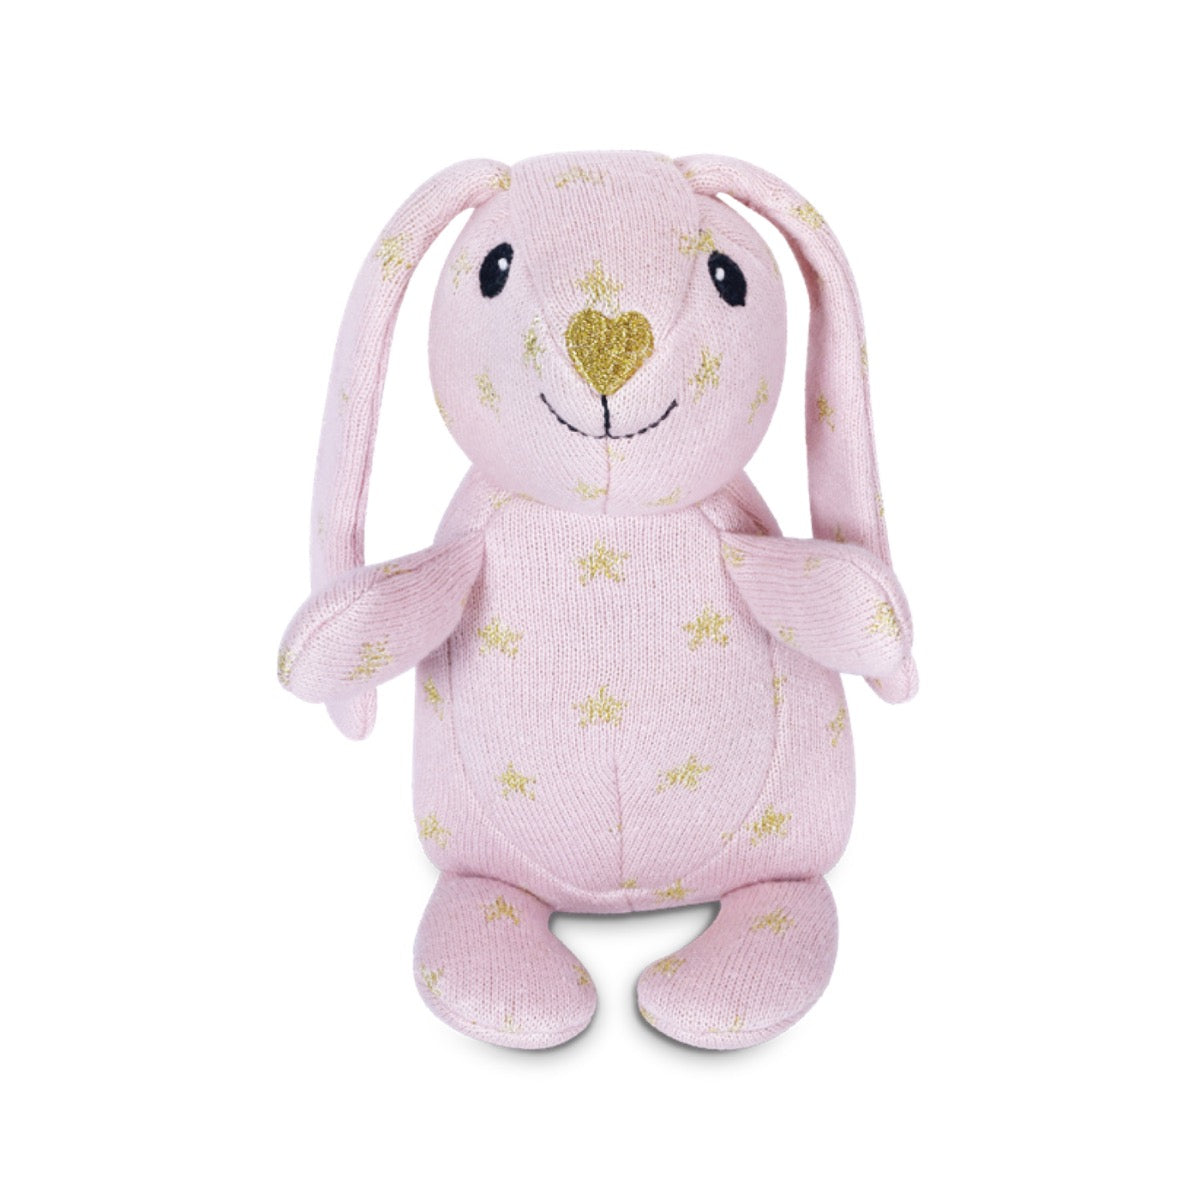 Knit Patterned Bunny Plush - Sparkle